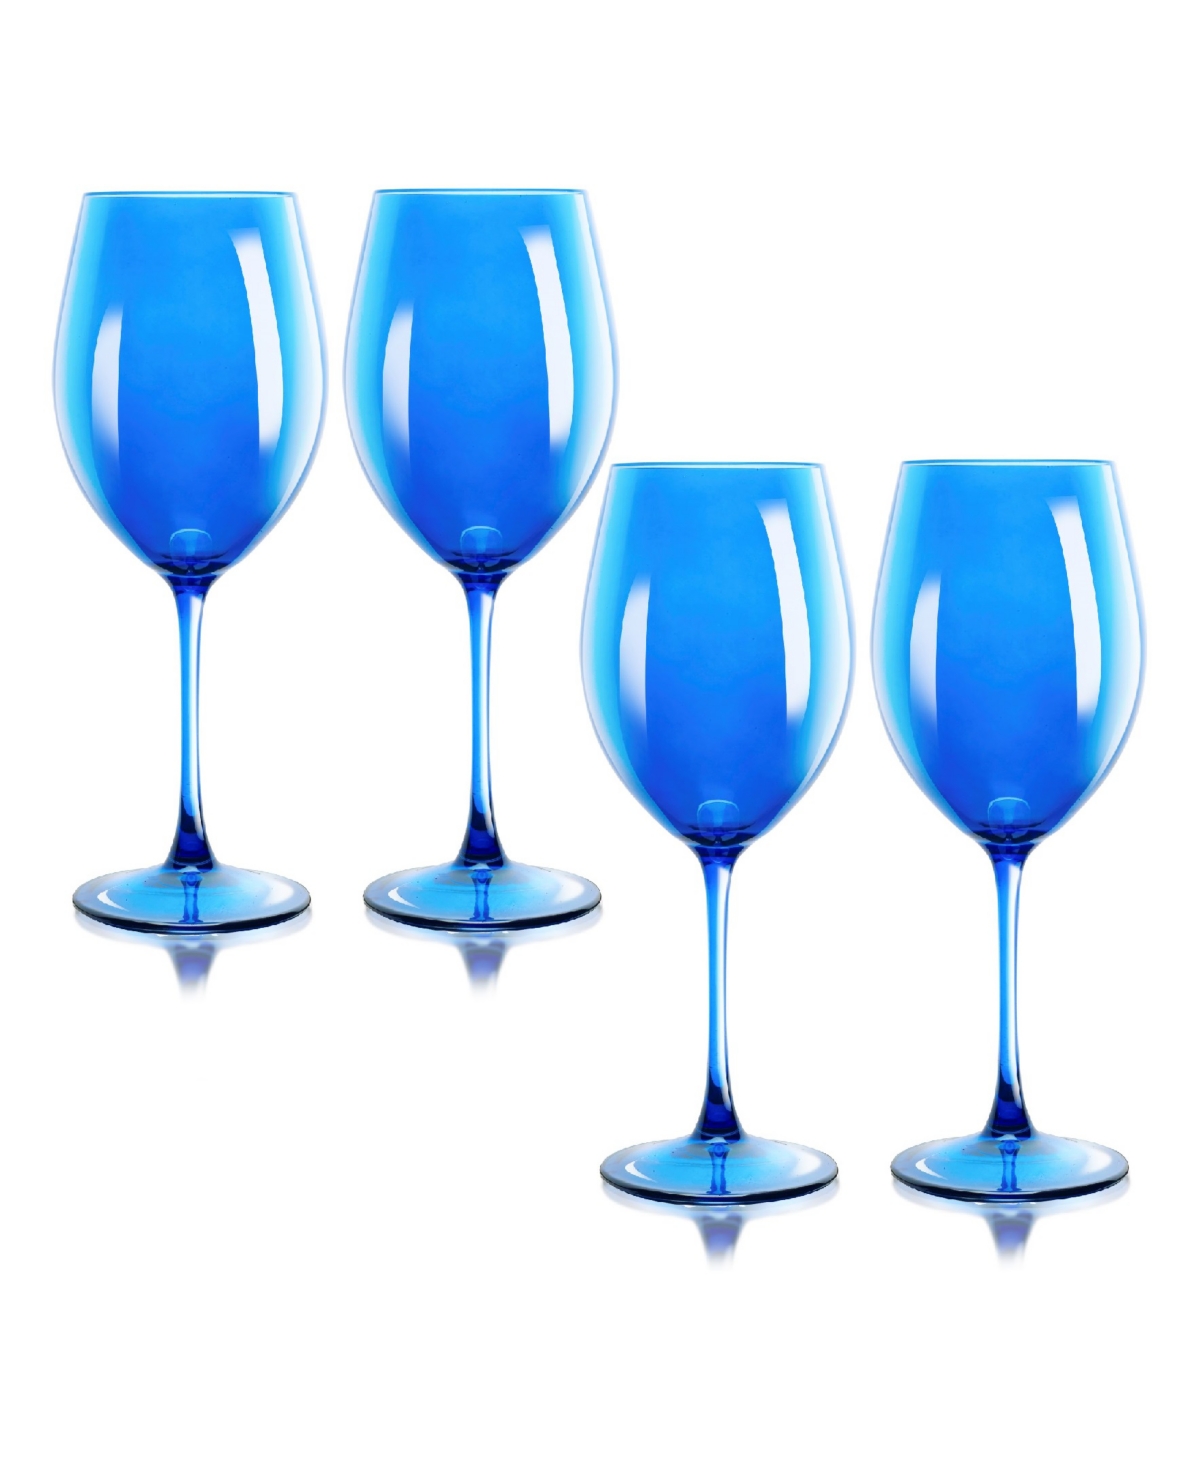 Qualia Glass Carnival All Purpose 20 oz Wine Glasses, Set Of 4 In Blue